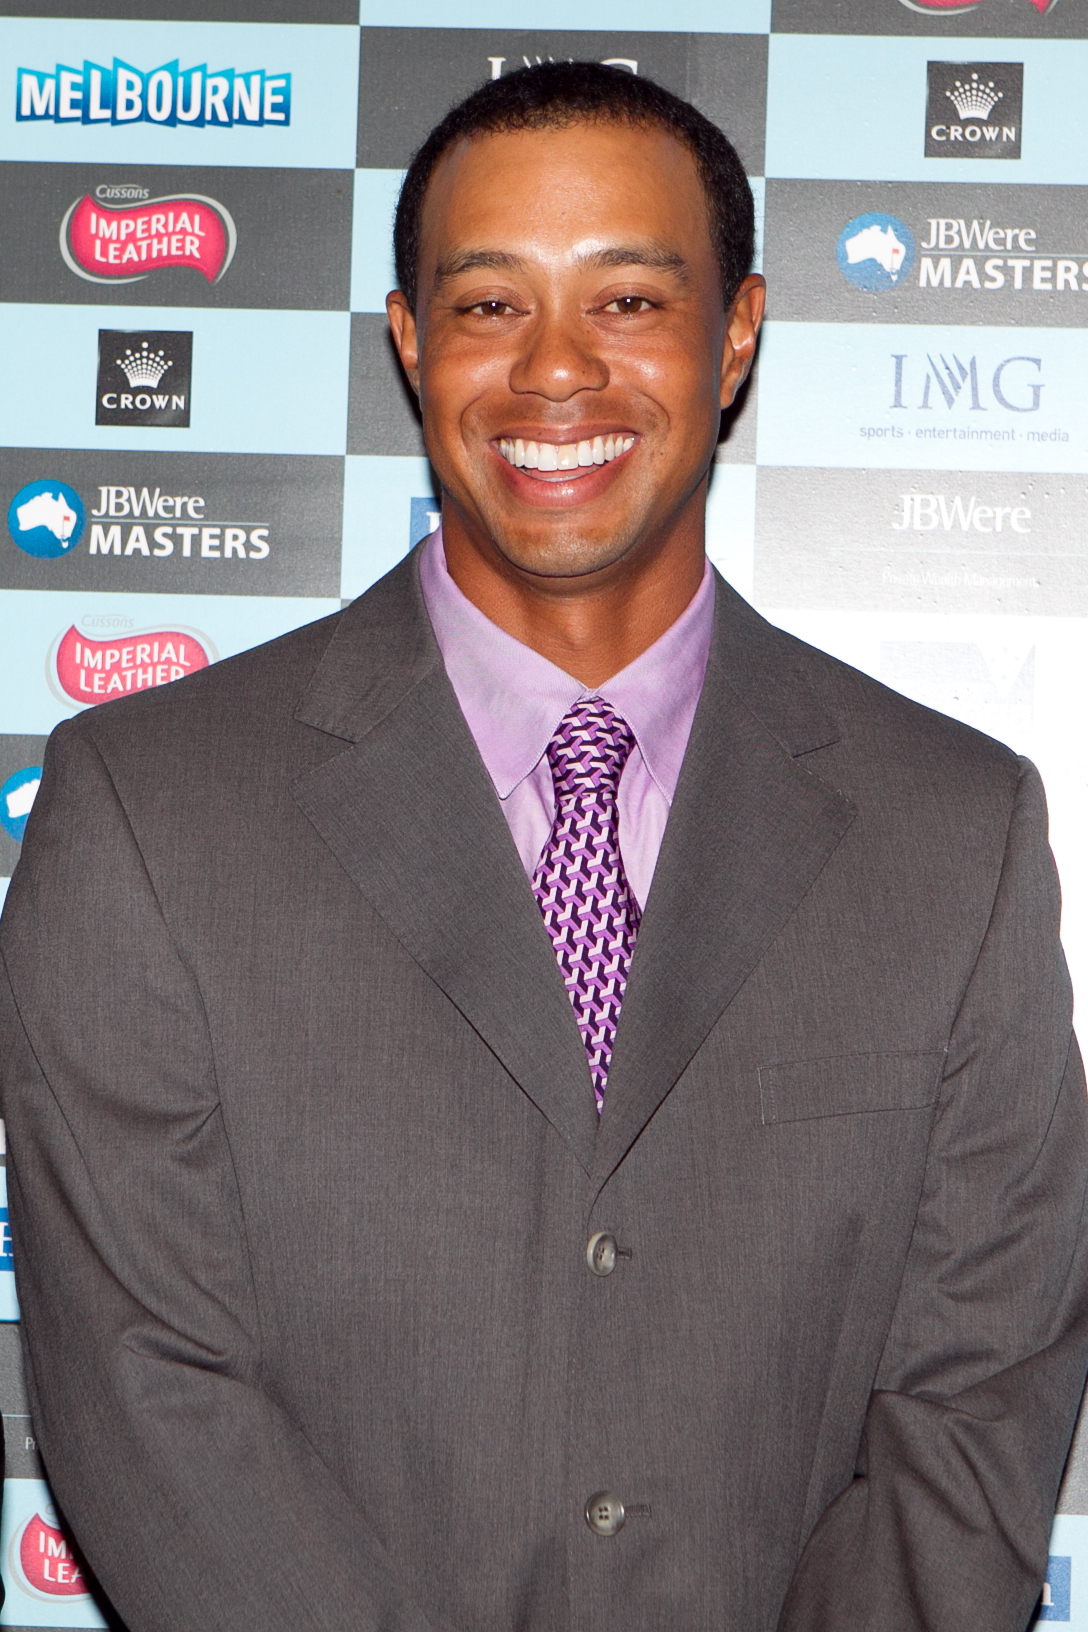 Tiger Woods, Familj, skilsmässa, Kändis, Stjärna, Otrohet, Hollywood, Relationstips